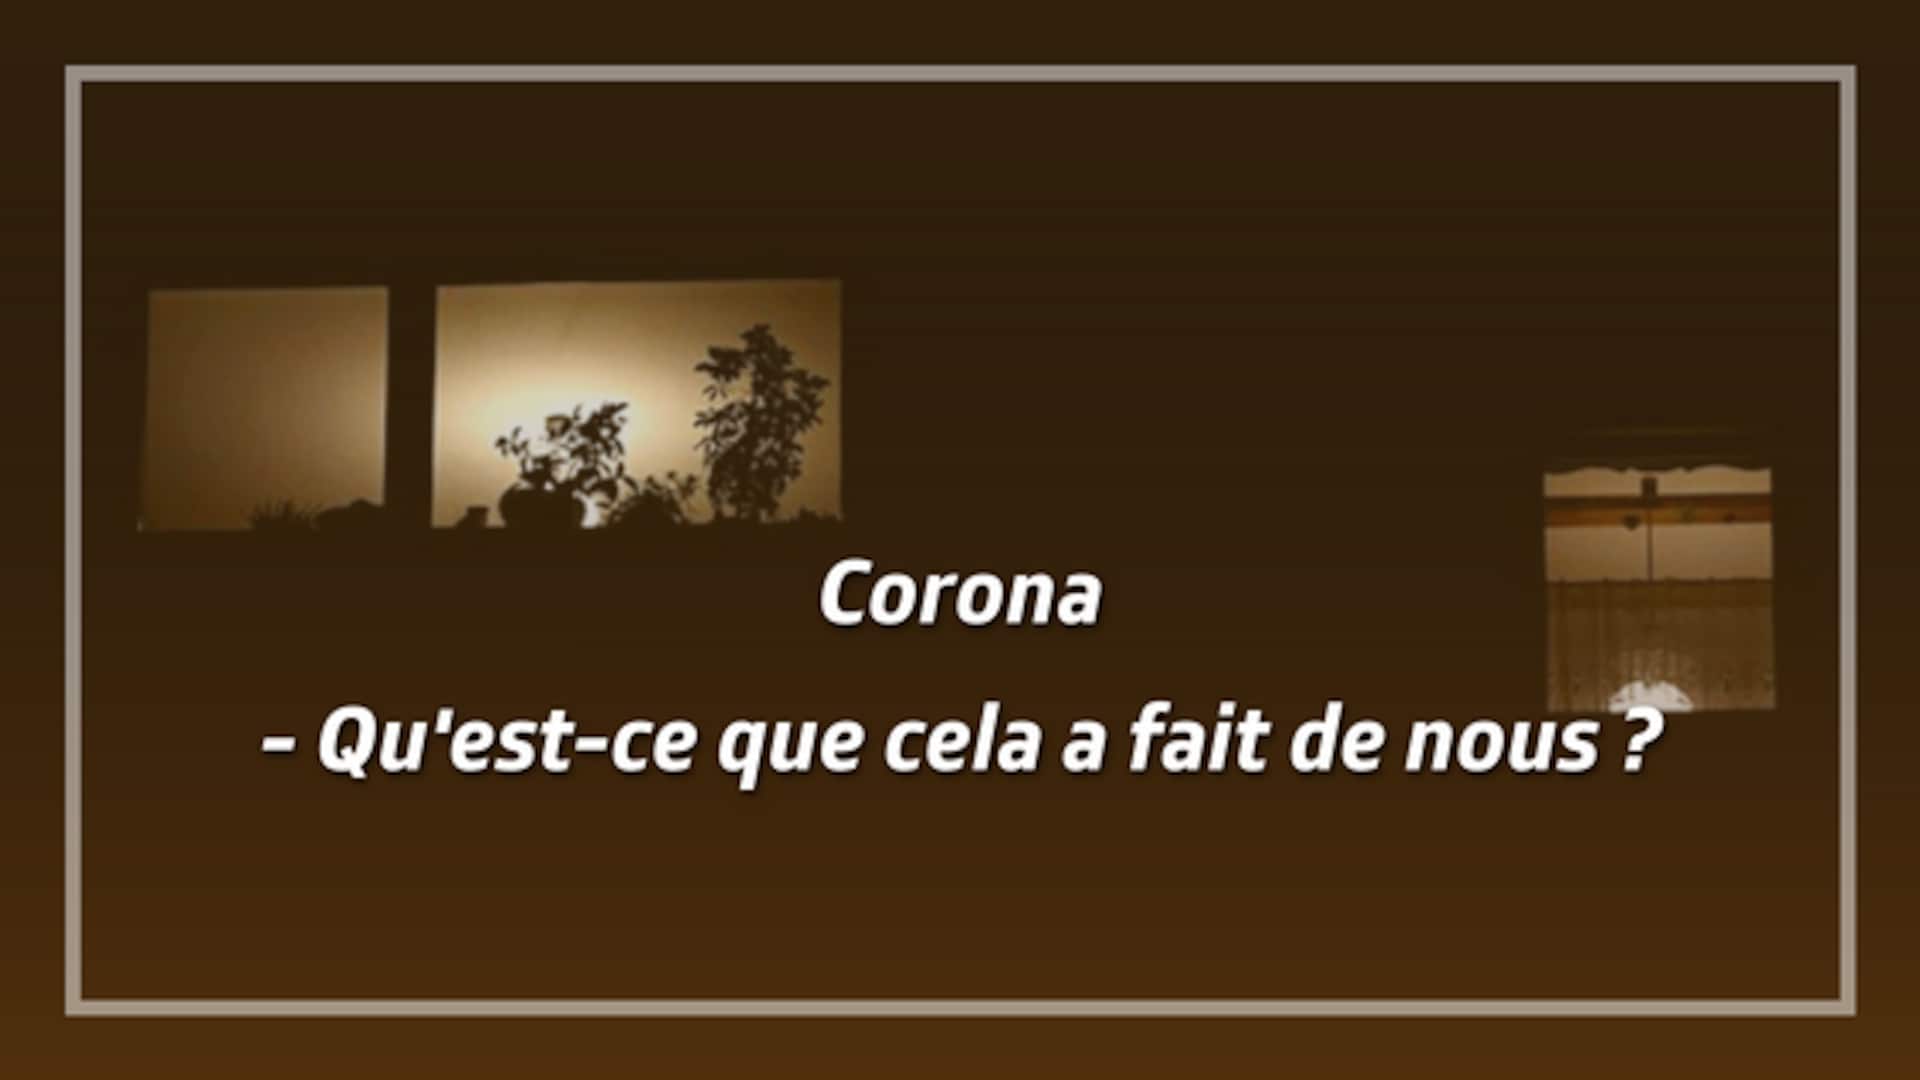 Corona - Qu'est-ce que cela a fait de nous ?